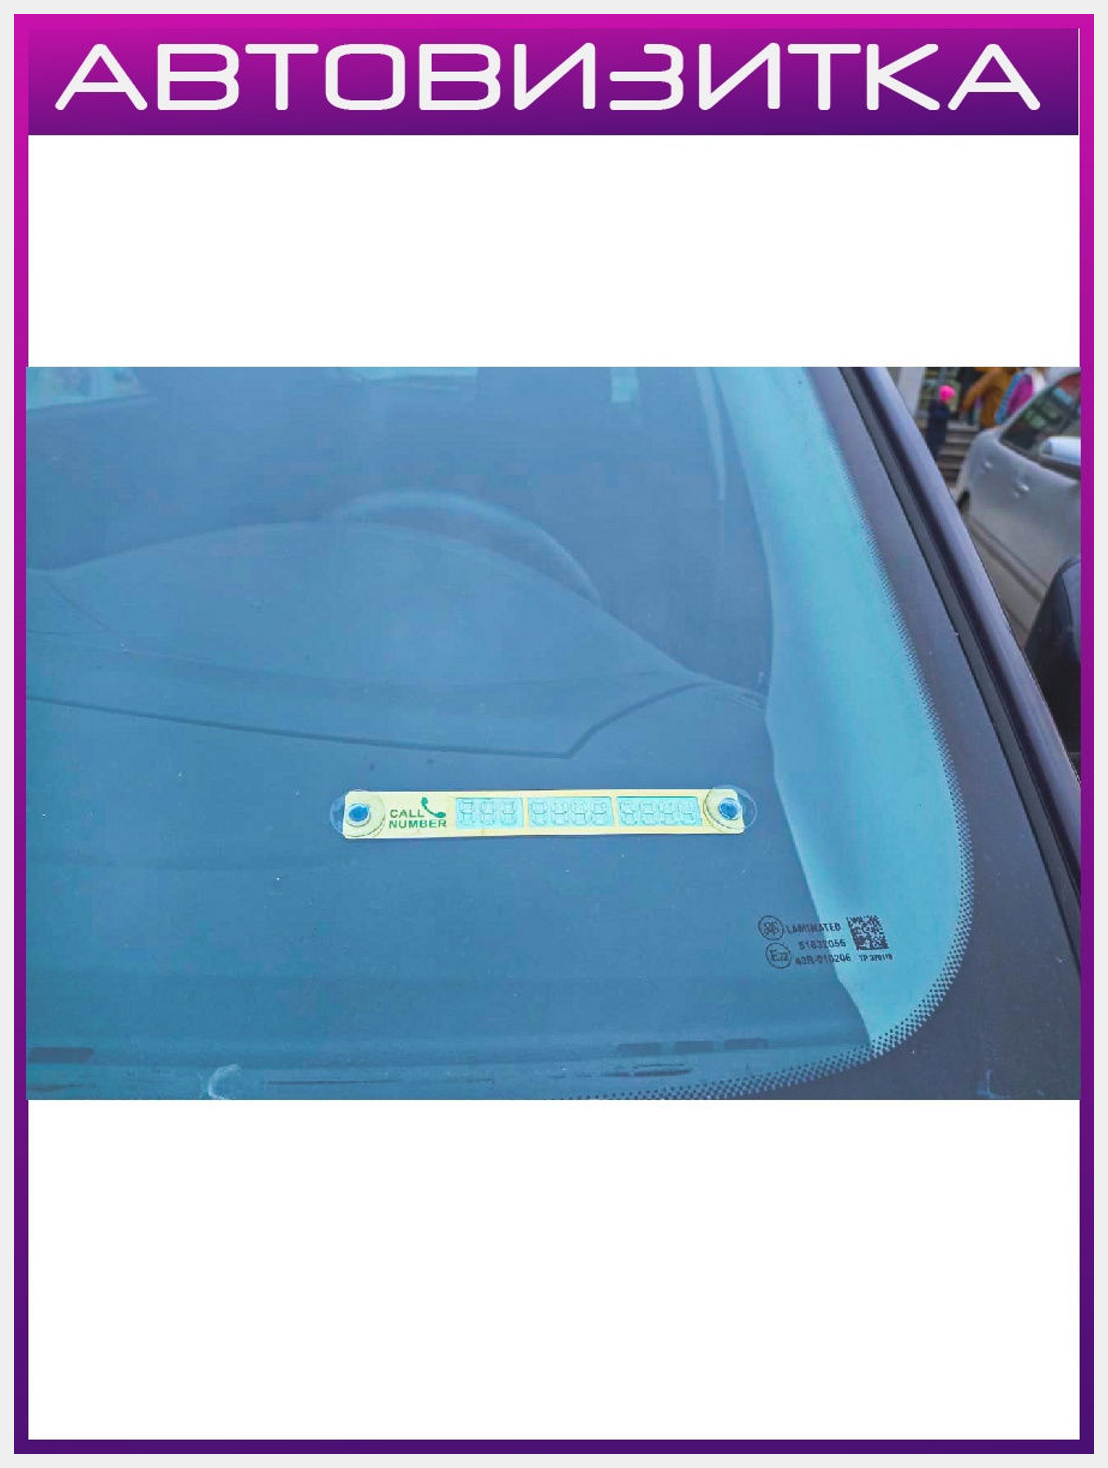 Электронная визитка на лобовом стекле или цифровая визитка для автовладельцев - это удобно?